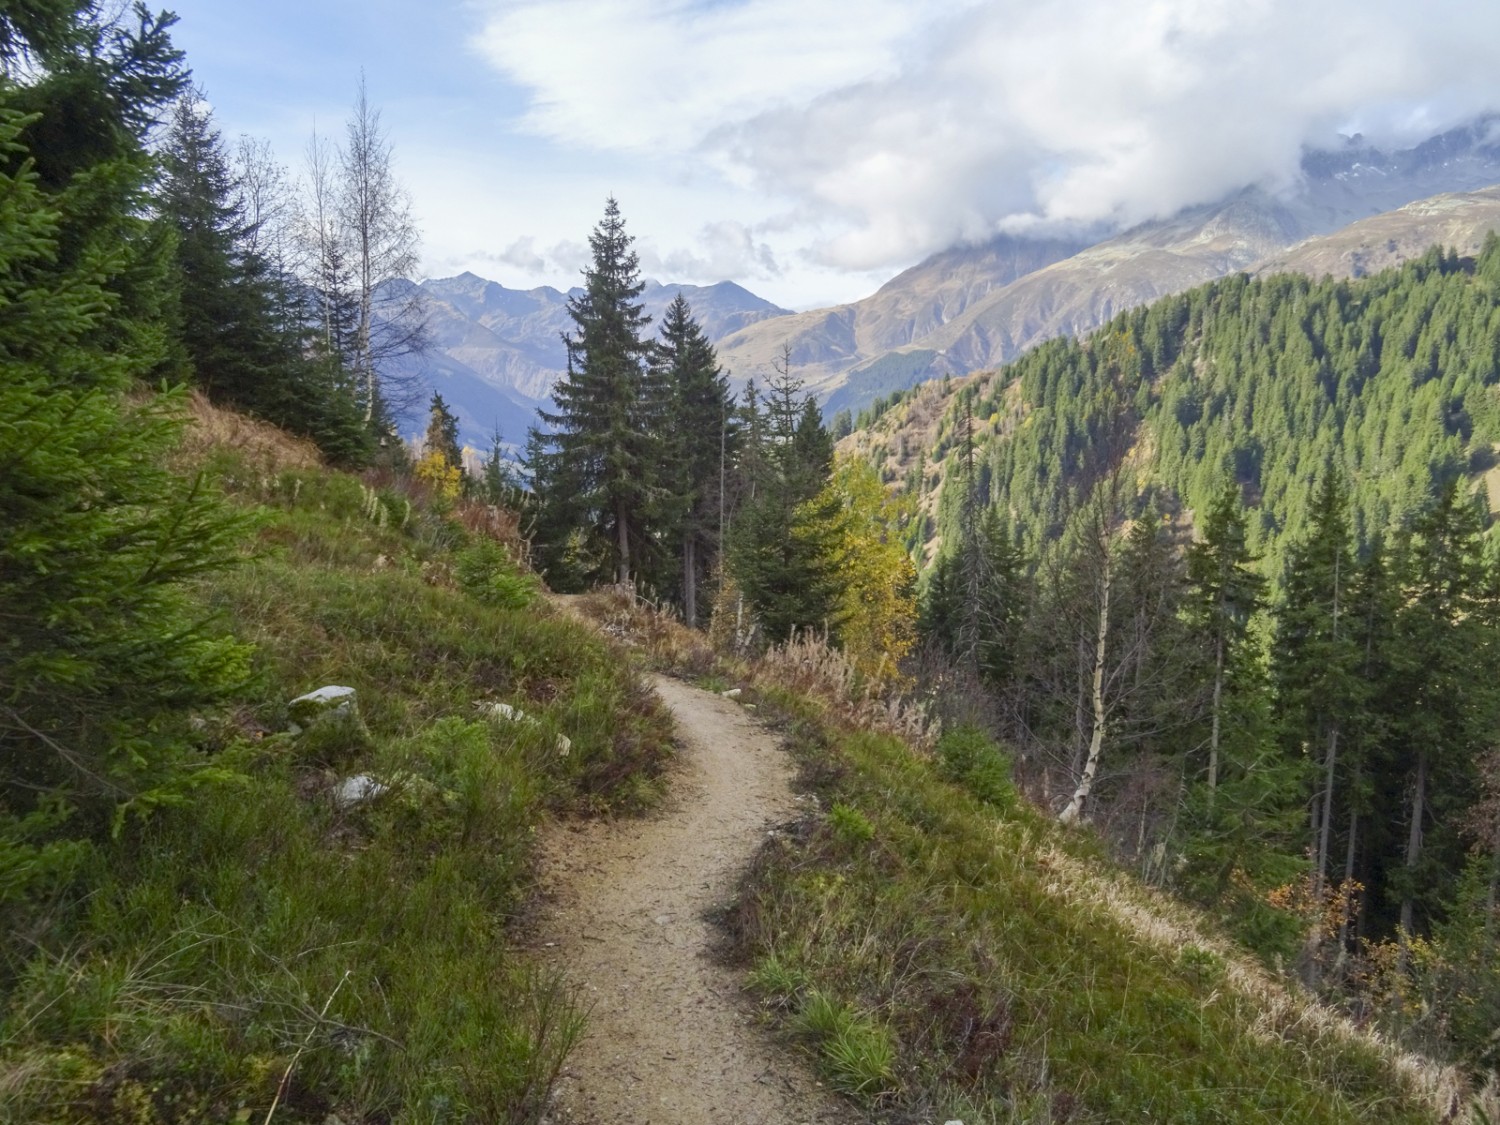 Le beau chemin mène de manière variée à travers la forêt et les clairières. Photo : Sabine Joss